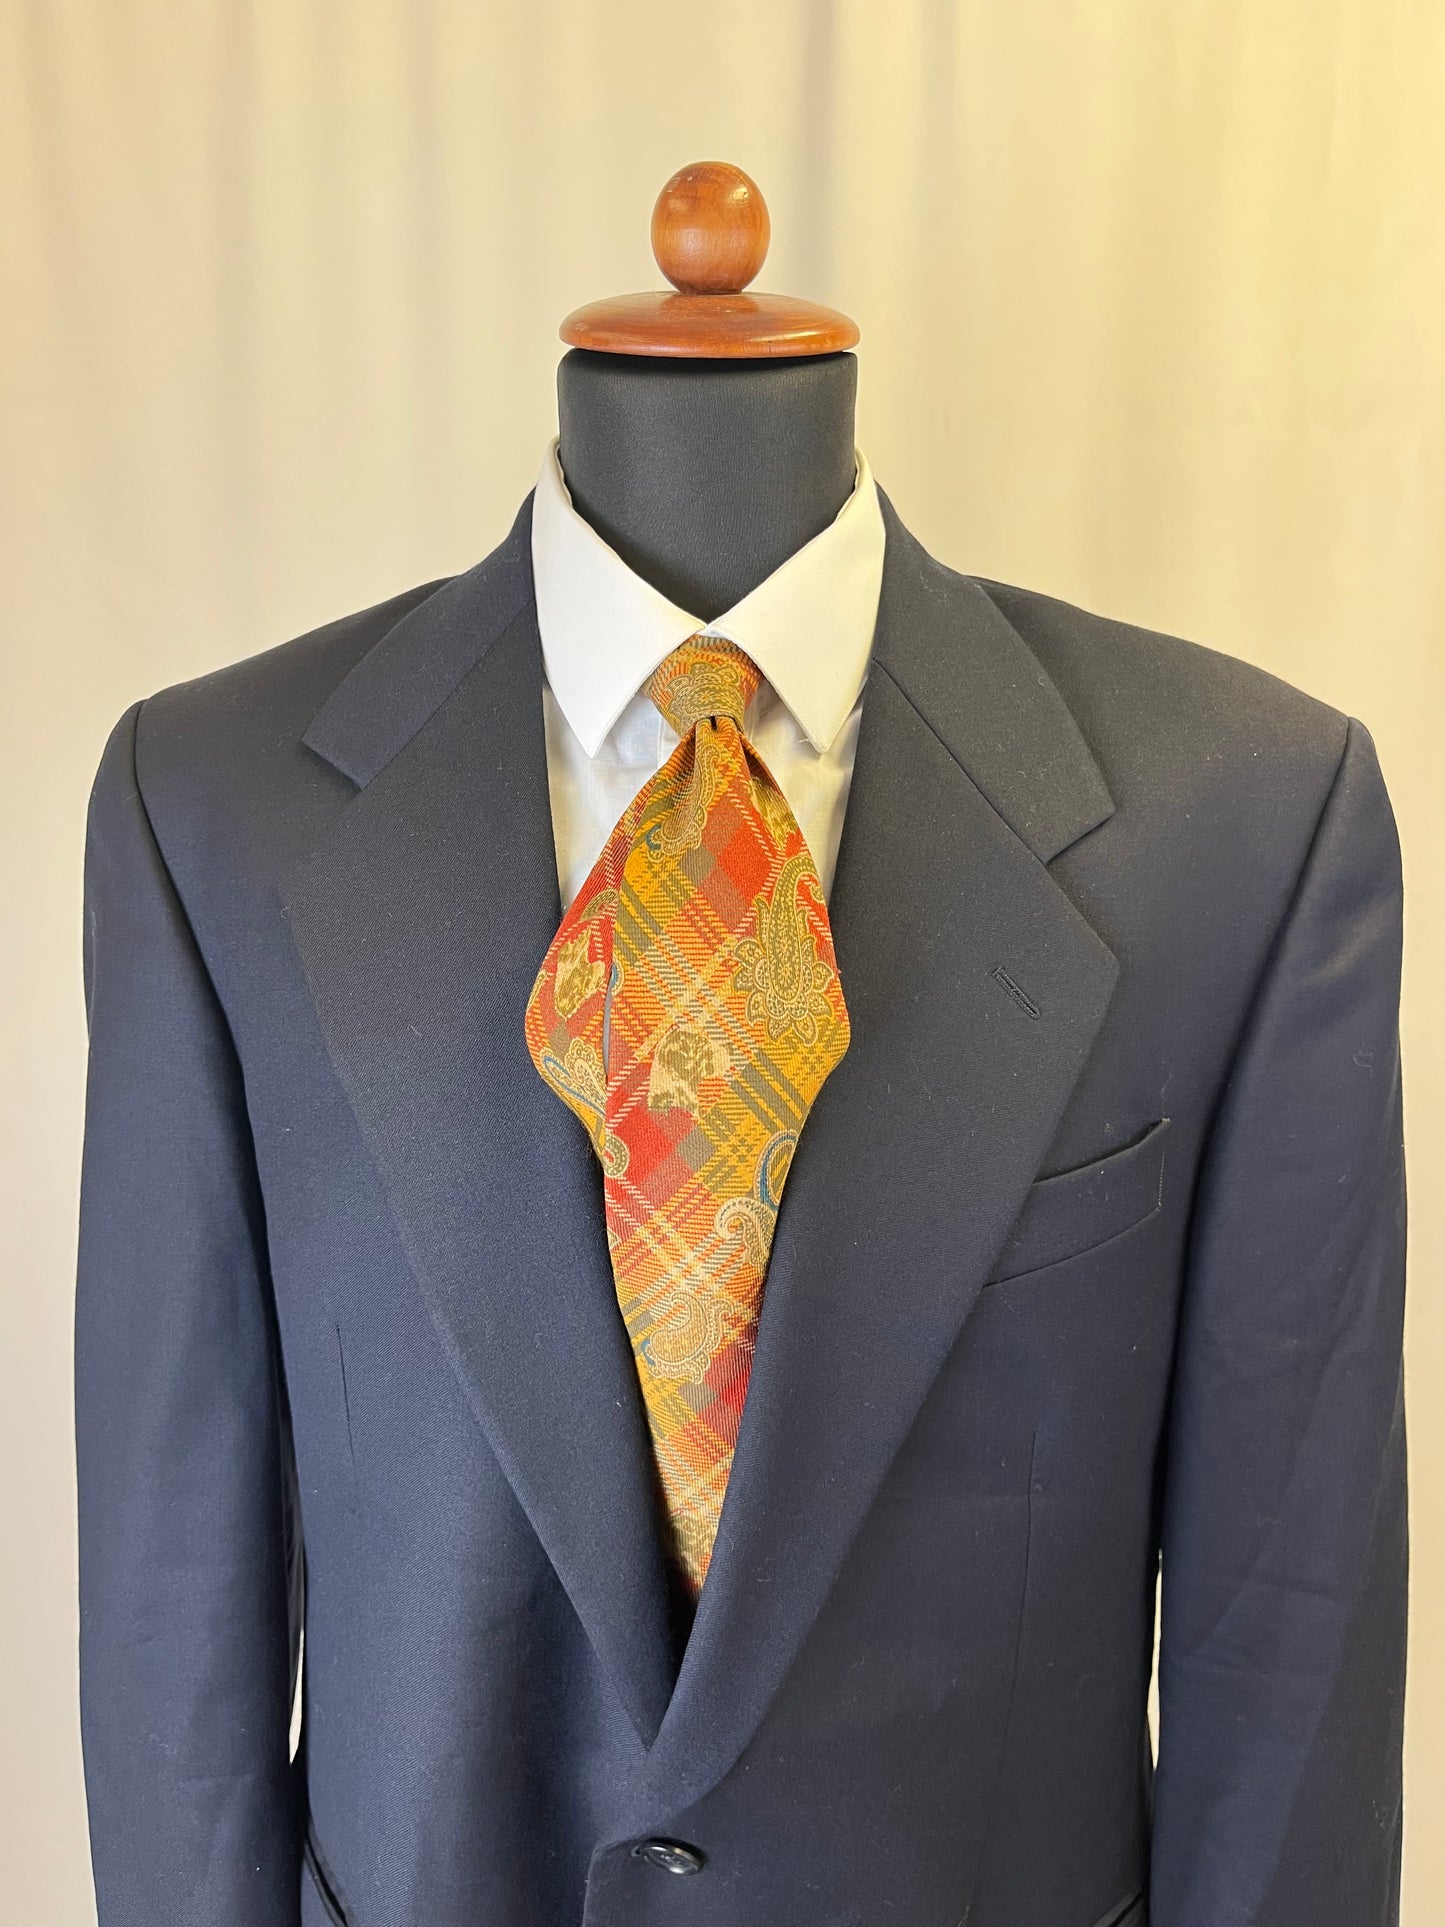 Cravatta ETRO anni ‘80 paisley